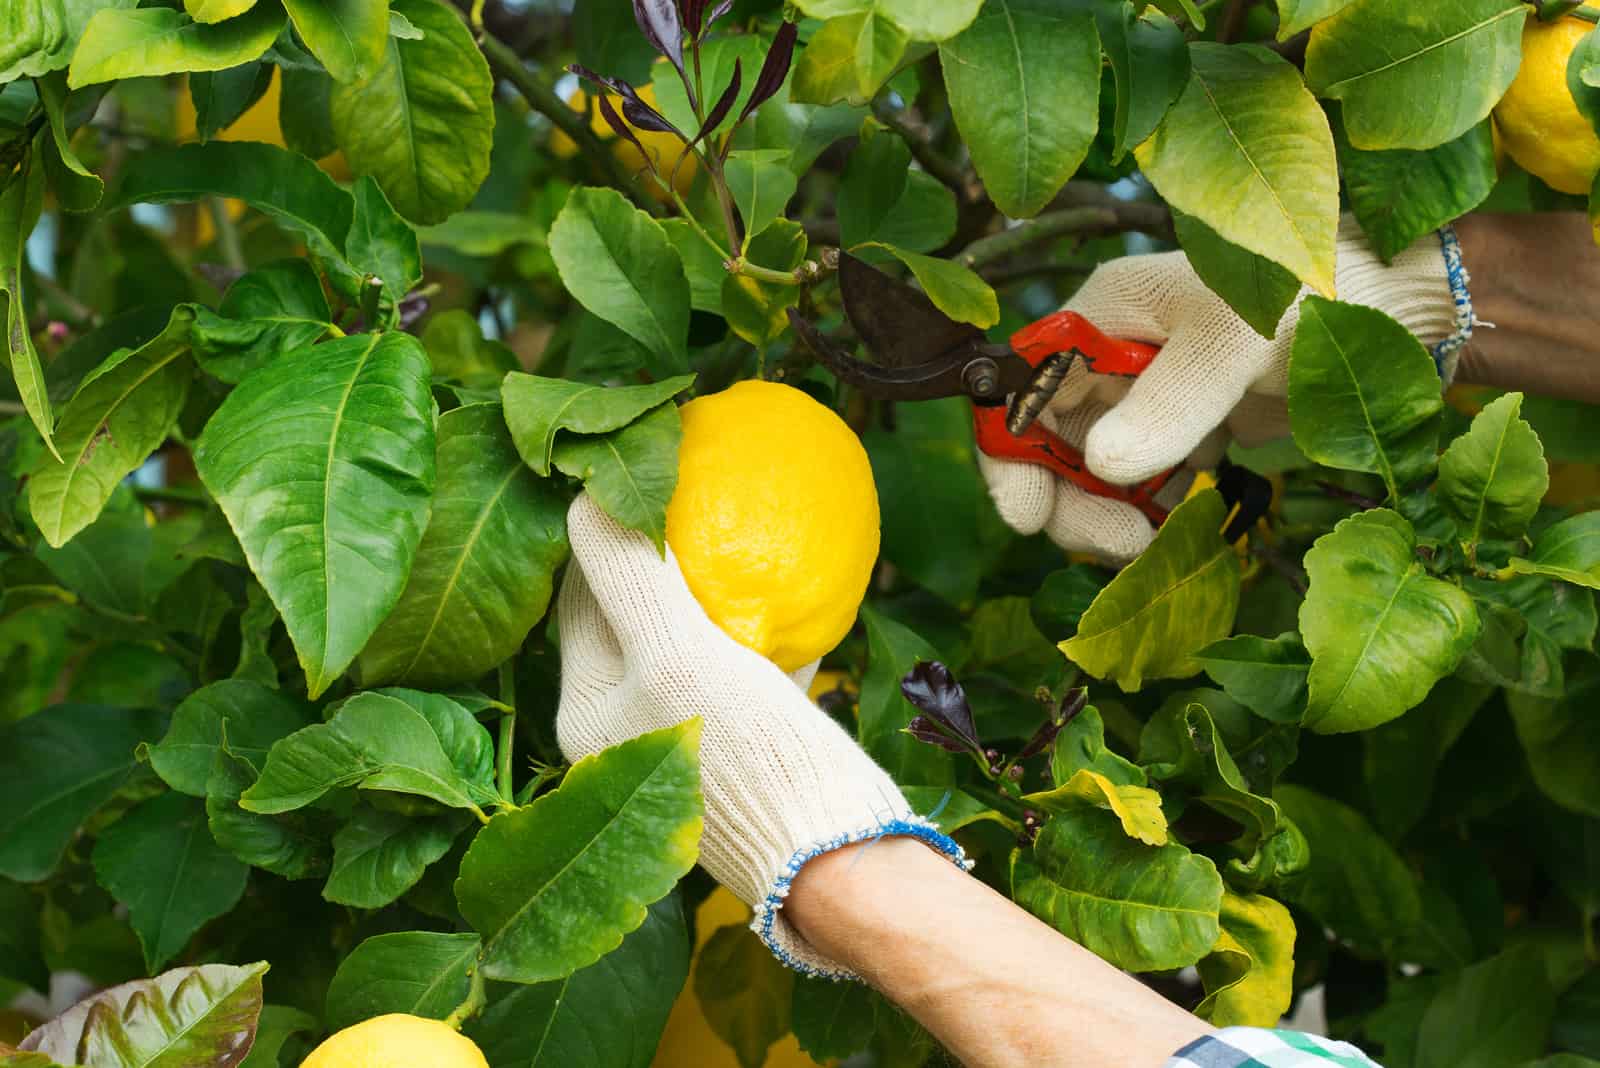 farmer harvesting lemons with garden pruner in hands